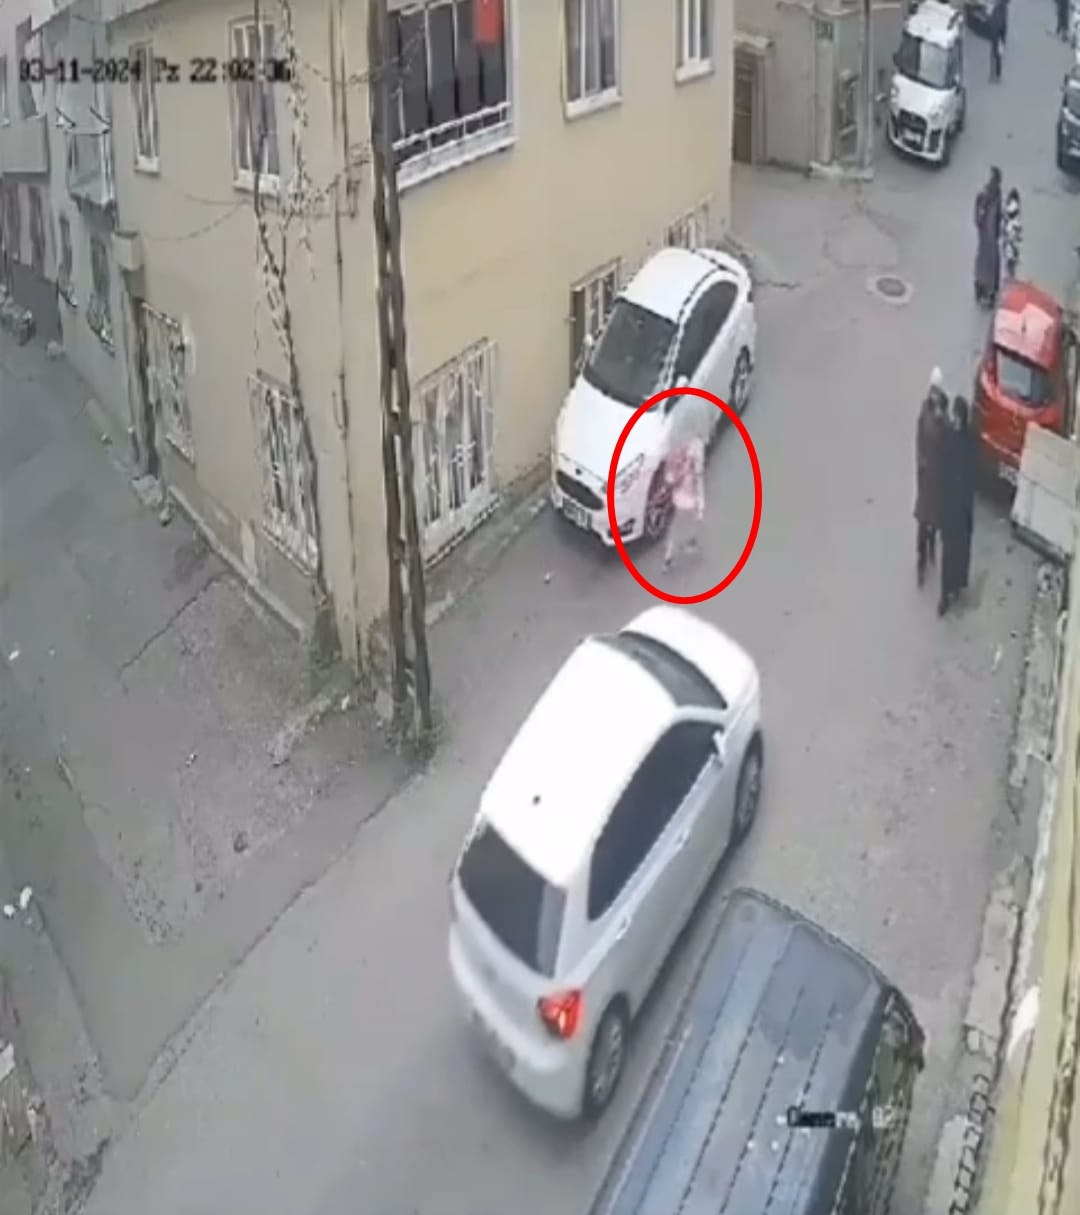 Küçük kıza araba çarptığını görünce pencereden atlayıp yardıma koştu: O anlar kamerada!